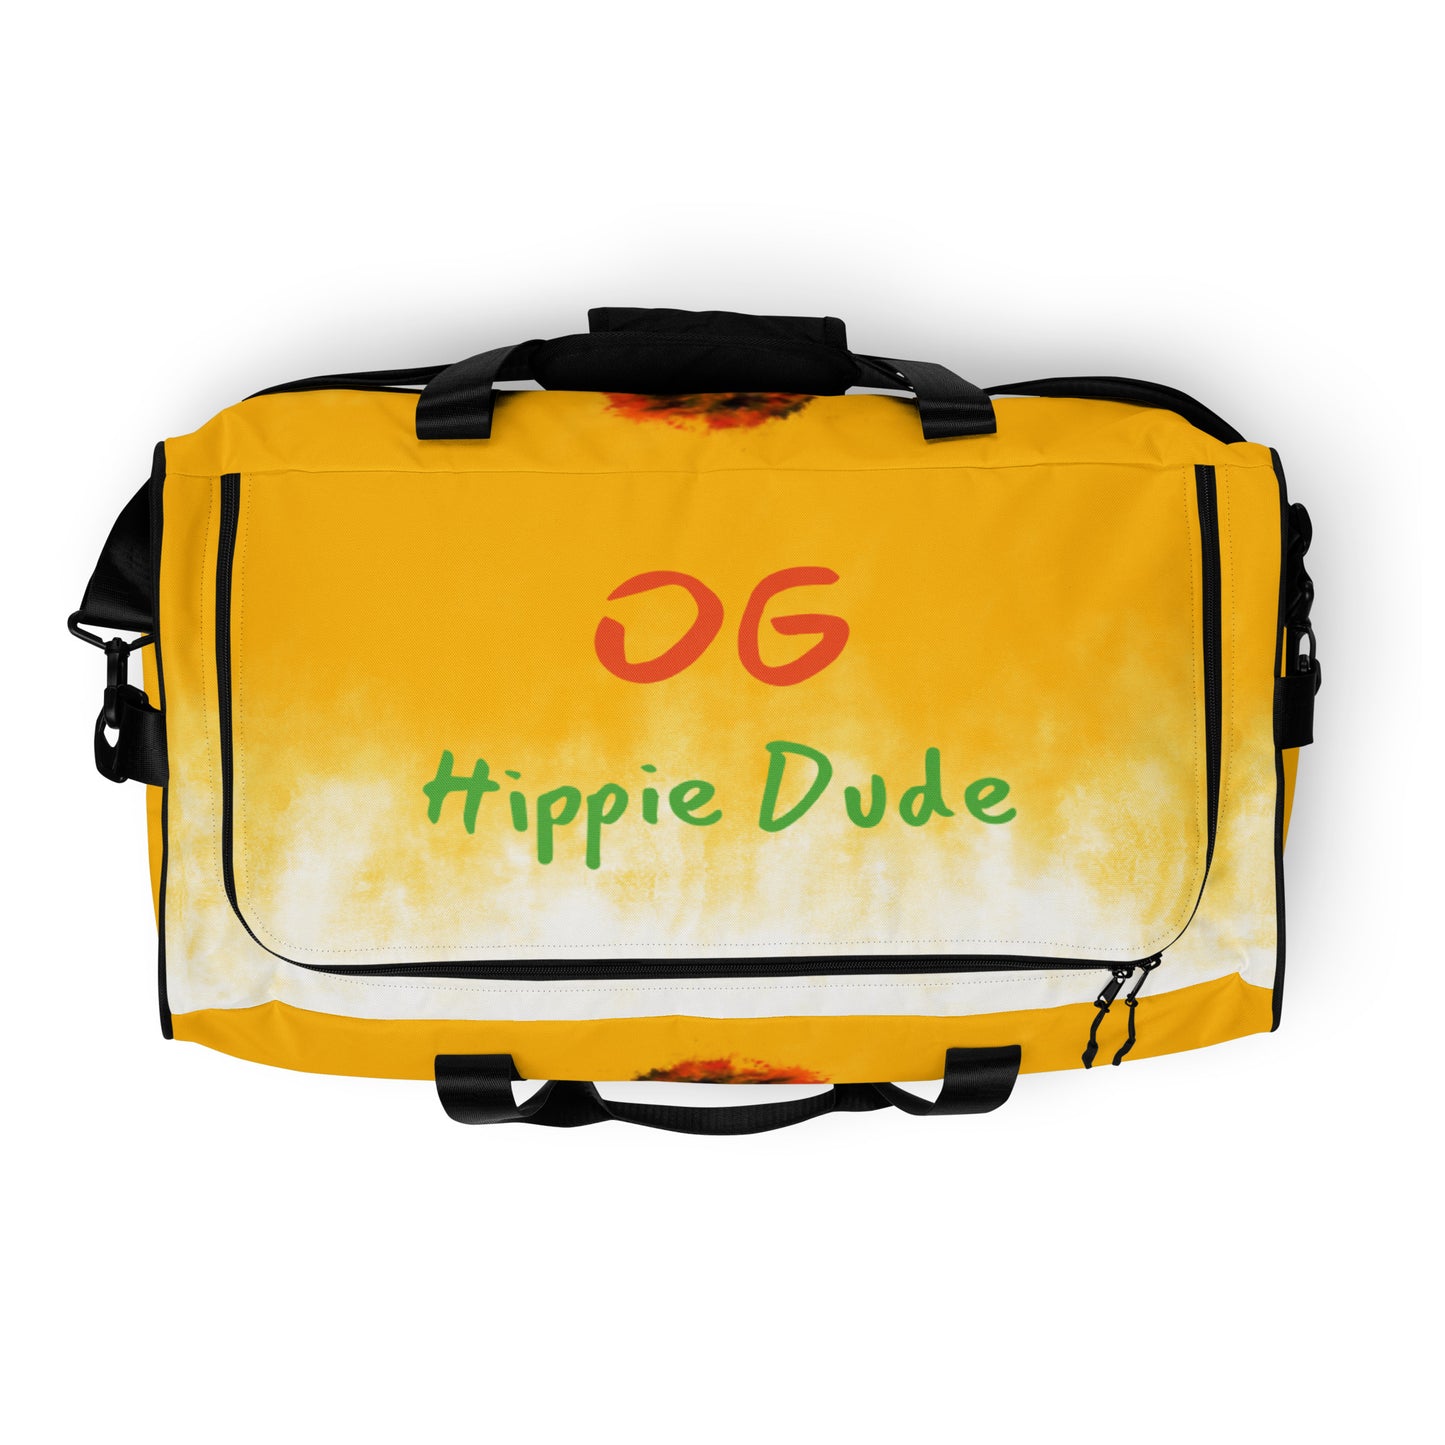 Sunny Day Duffle Bag - OG Hippie Dude